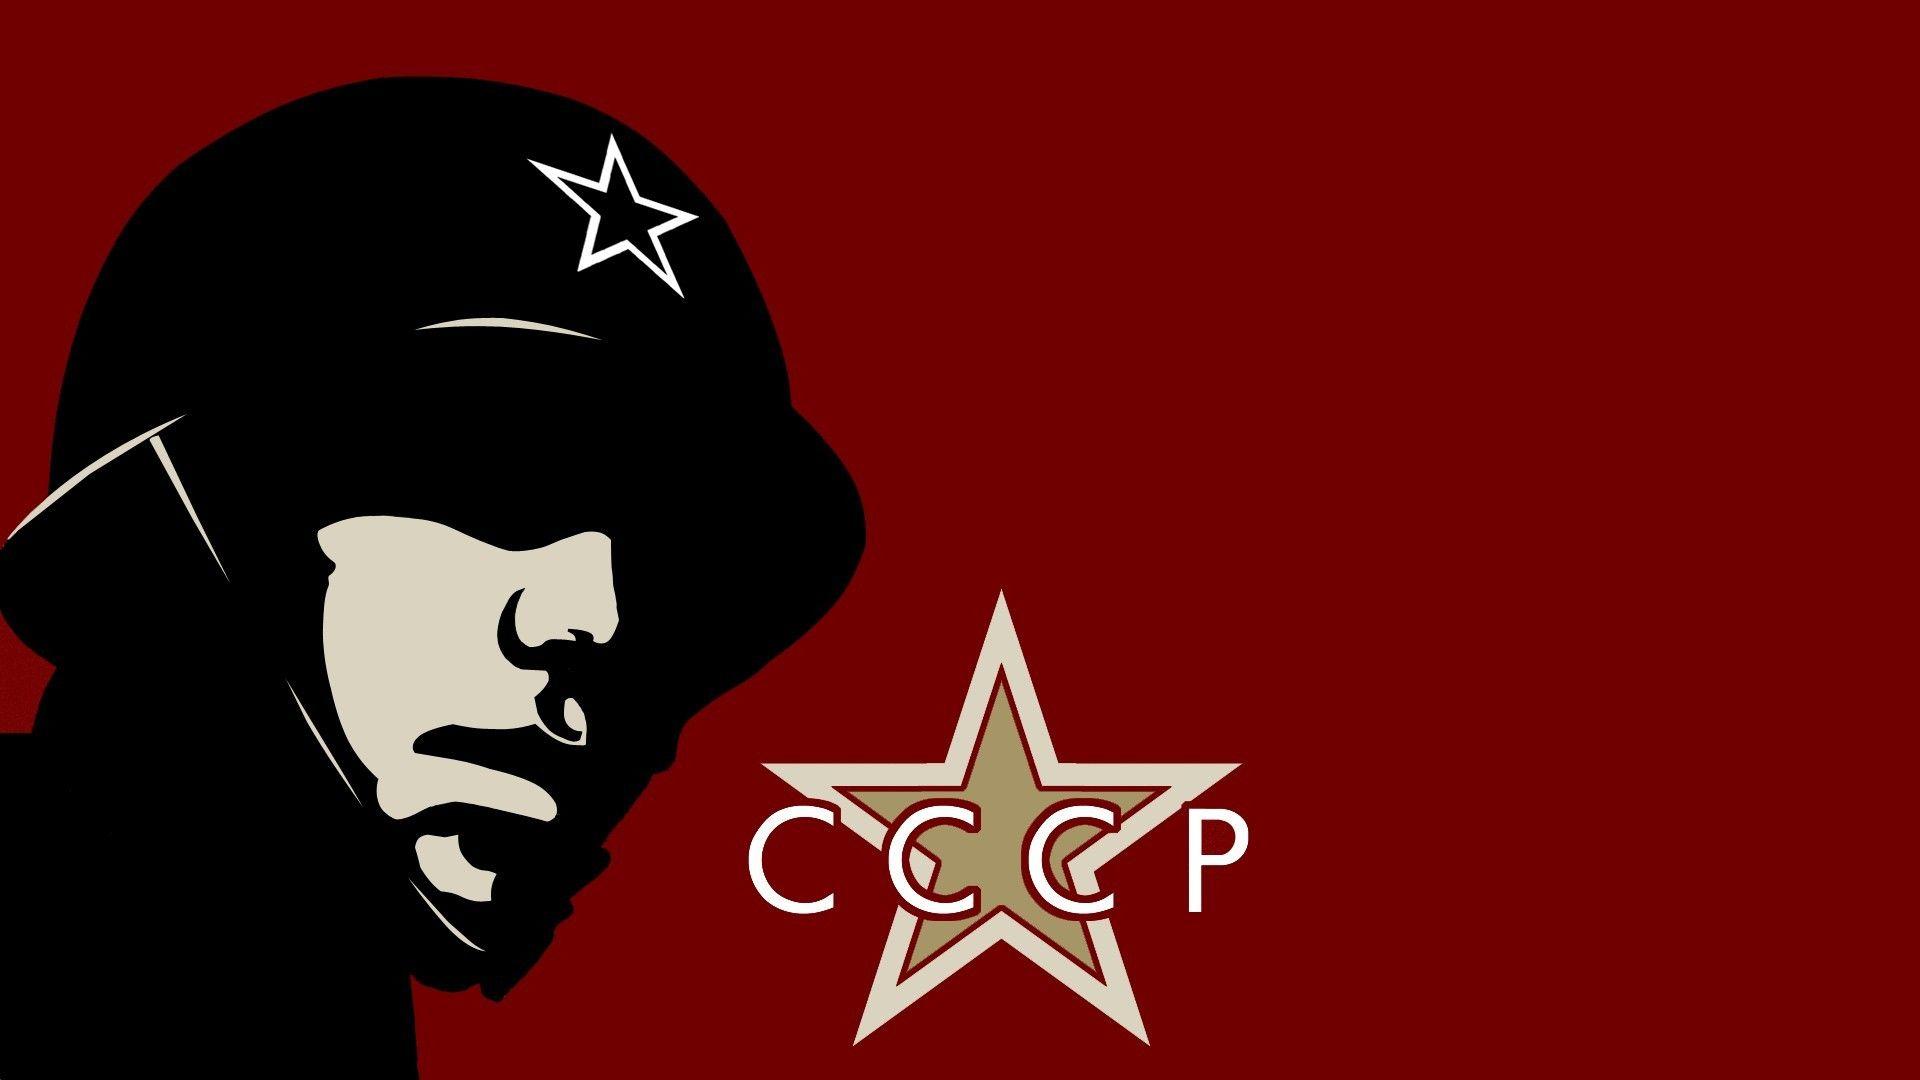 Soviet Union Soviet Army soldier Wallpaper free desktop background